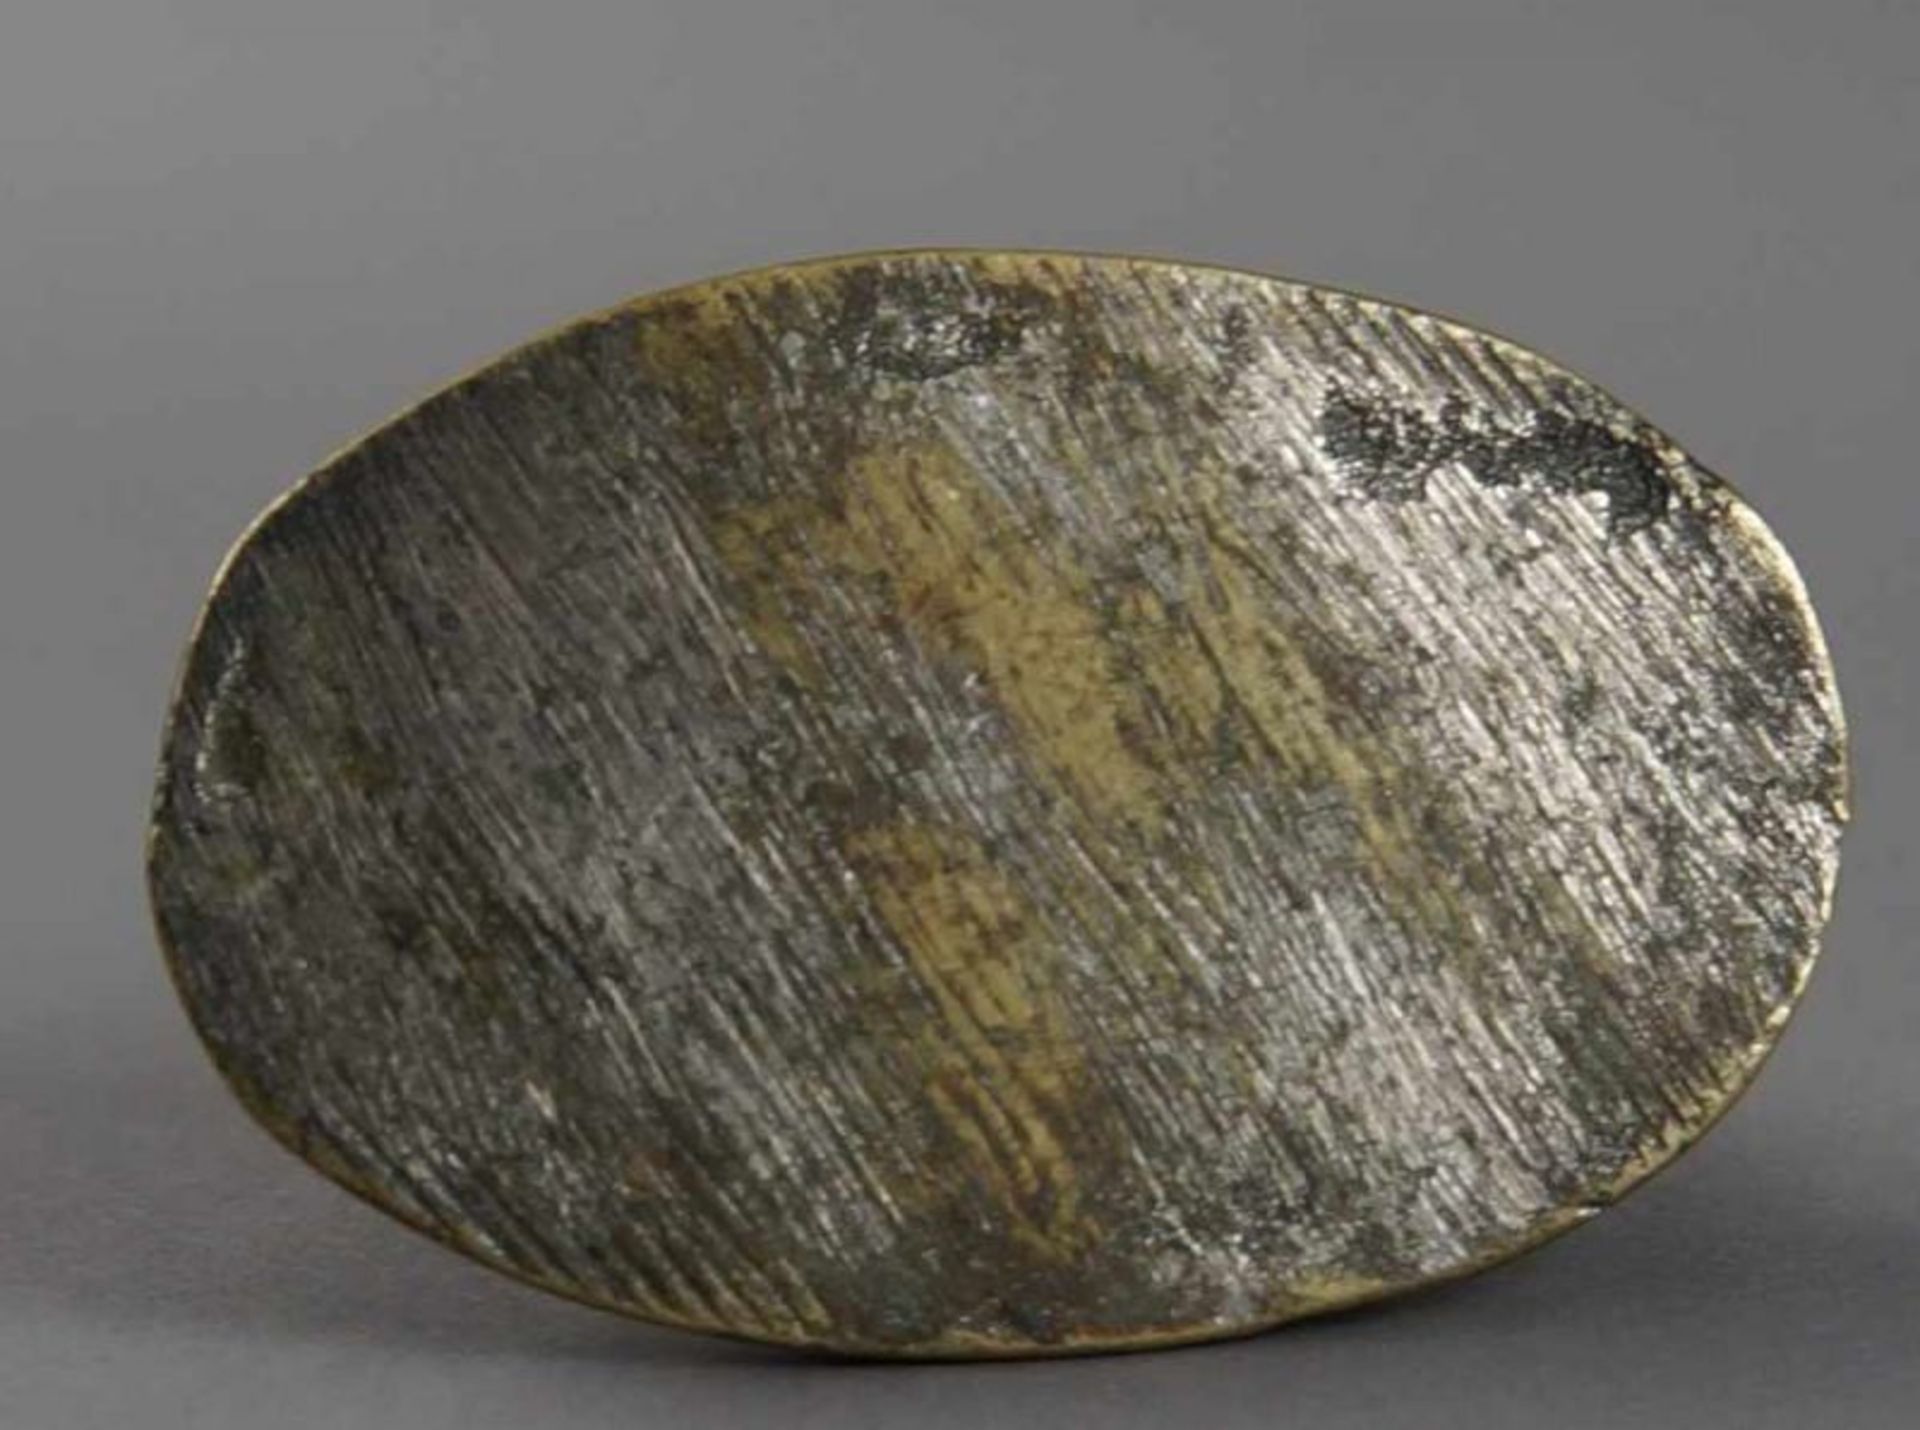 Federhalter, Bär an Baumstamm, aus Bronze, 17. JH, H 6 cm 20.17 % buyer's premium on the hammer - Bild 6 aus 6